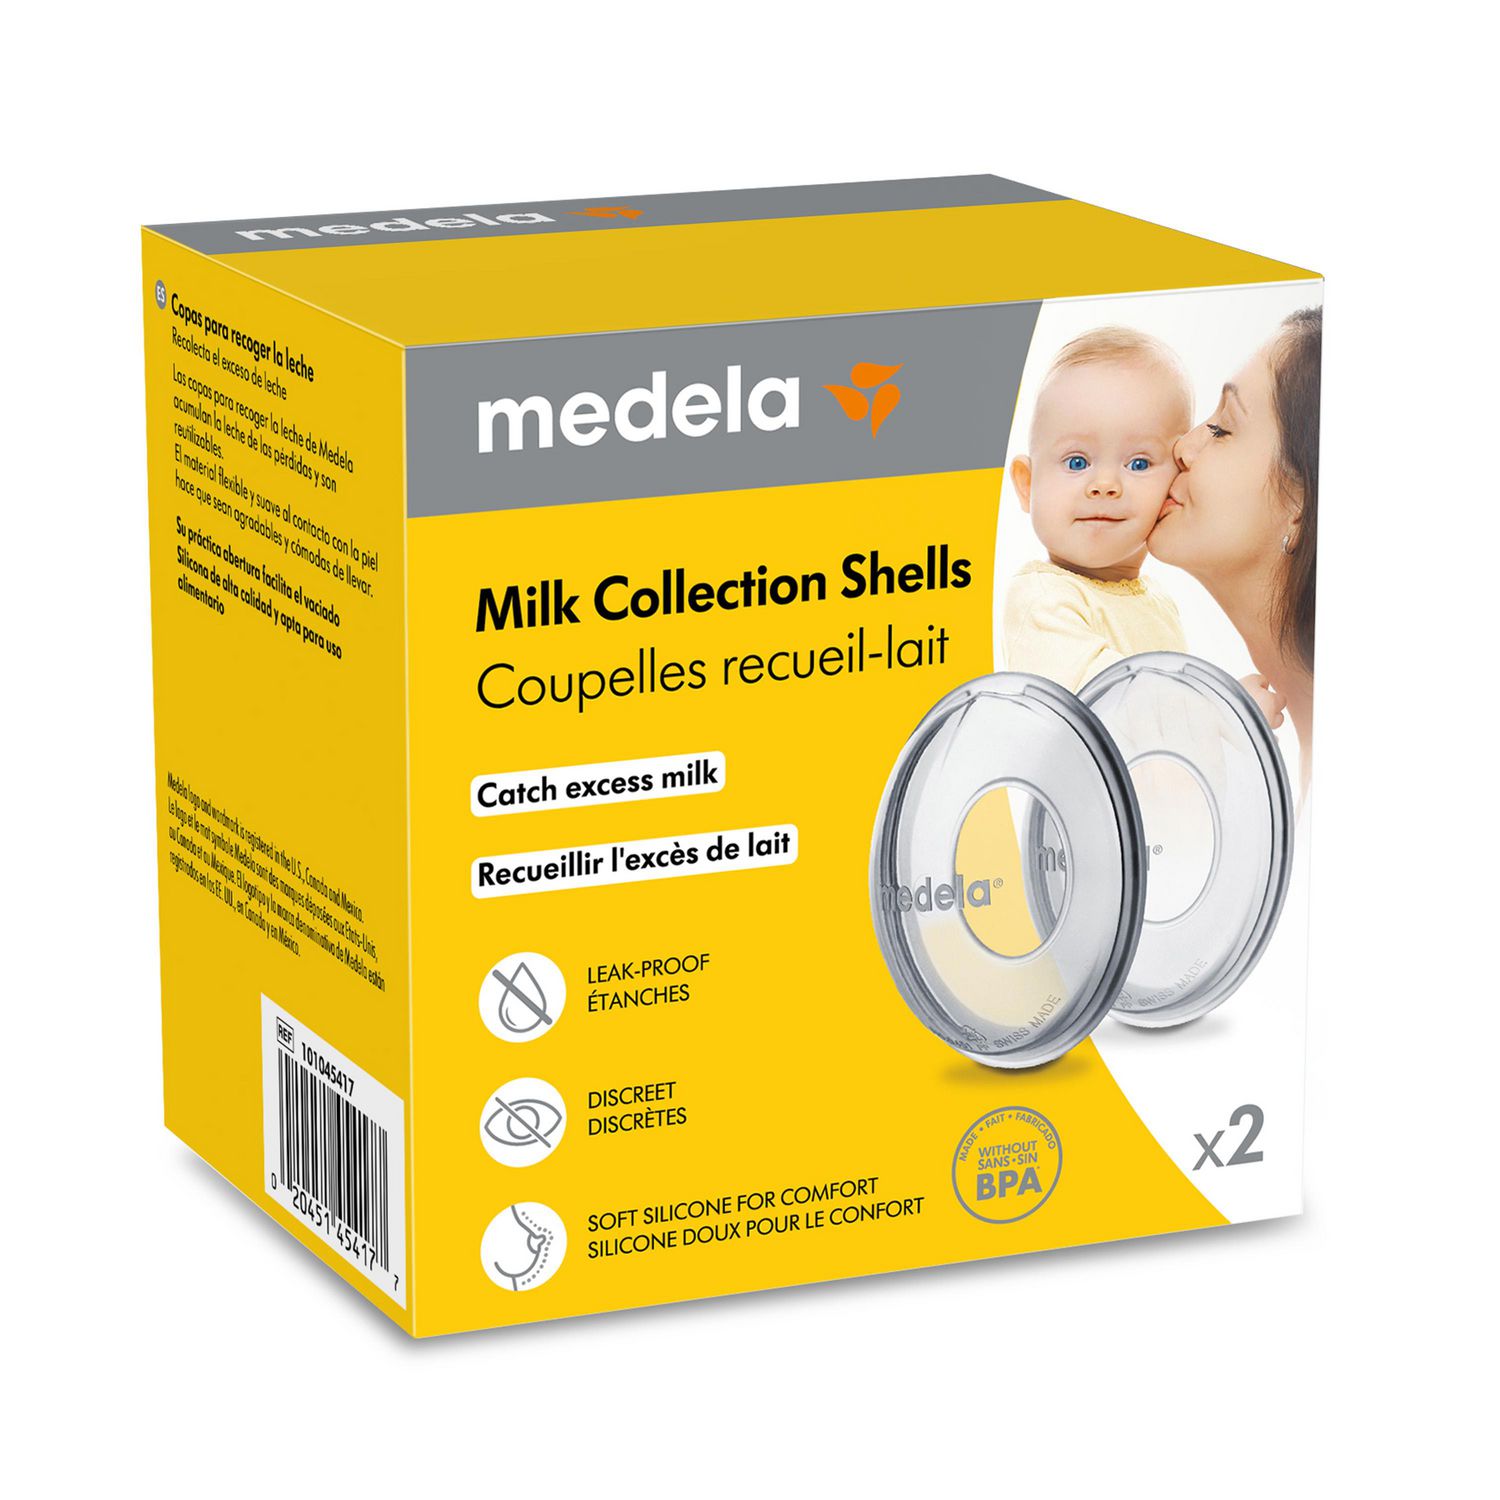 Coupelles recueil-lait de Medela 